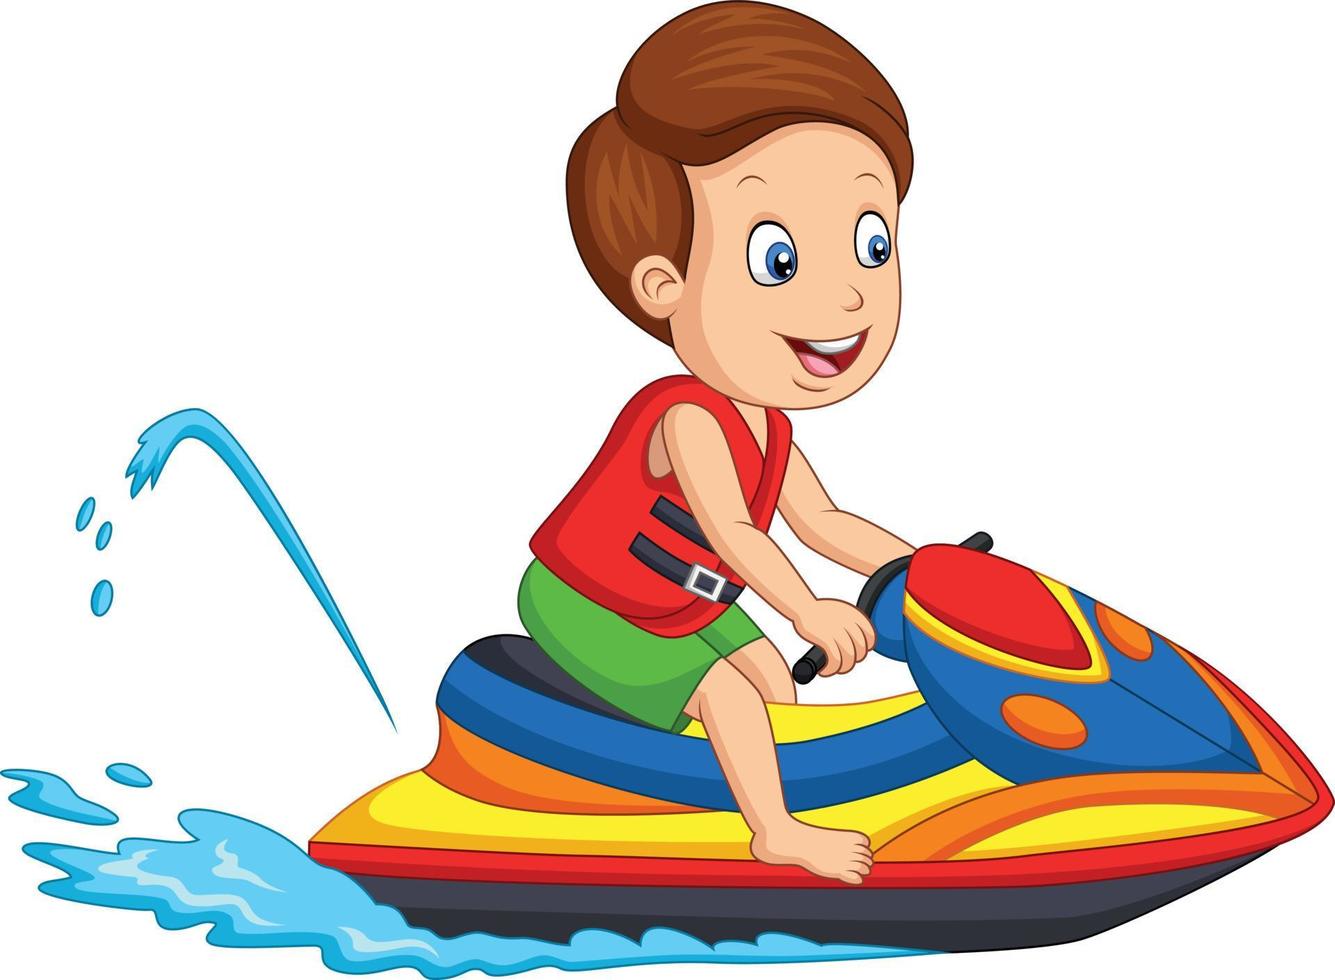 il ragazzino del fumetto cavalca una moto d'acqua vettore